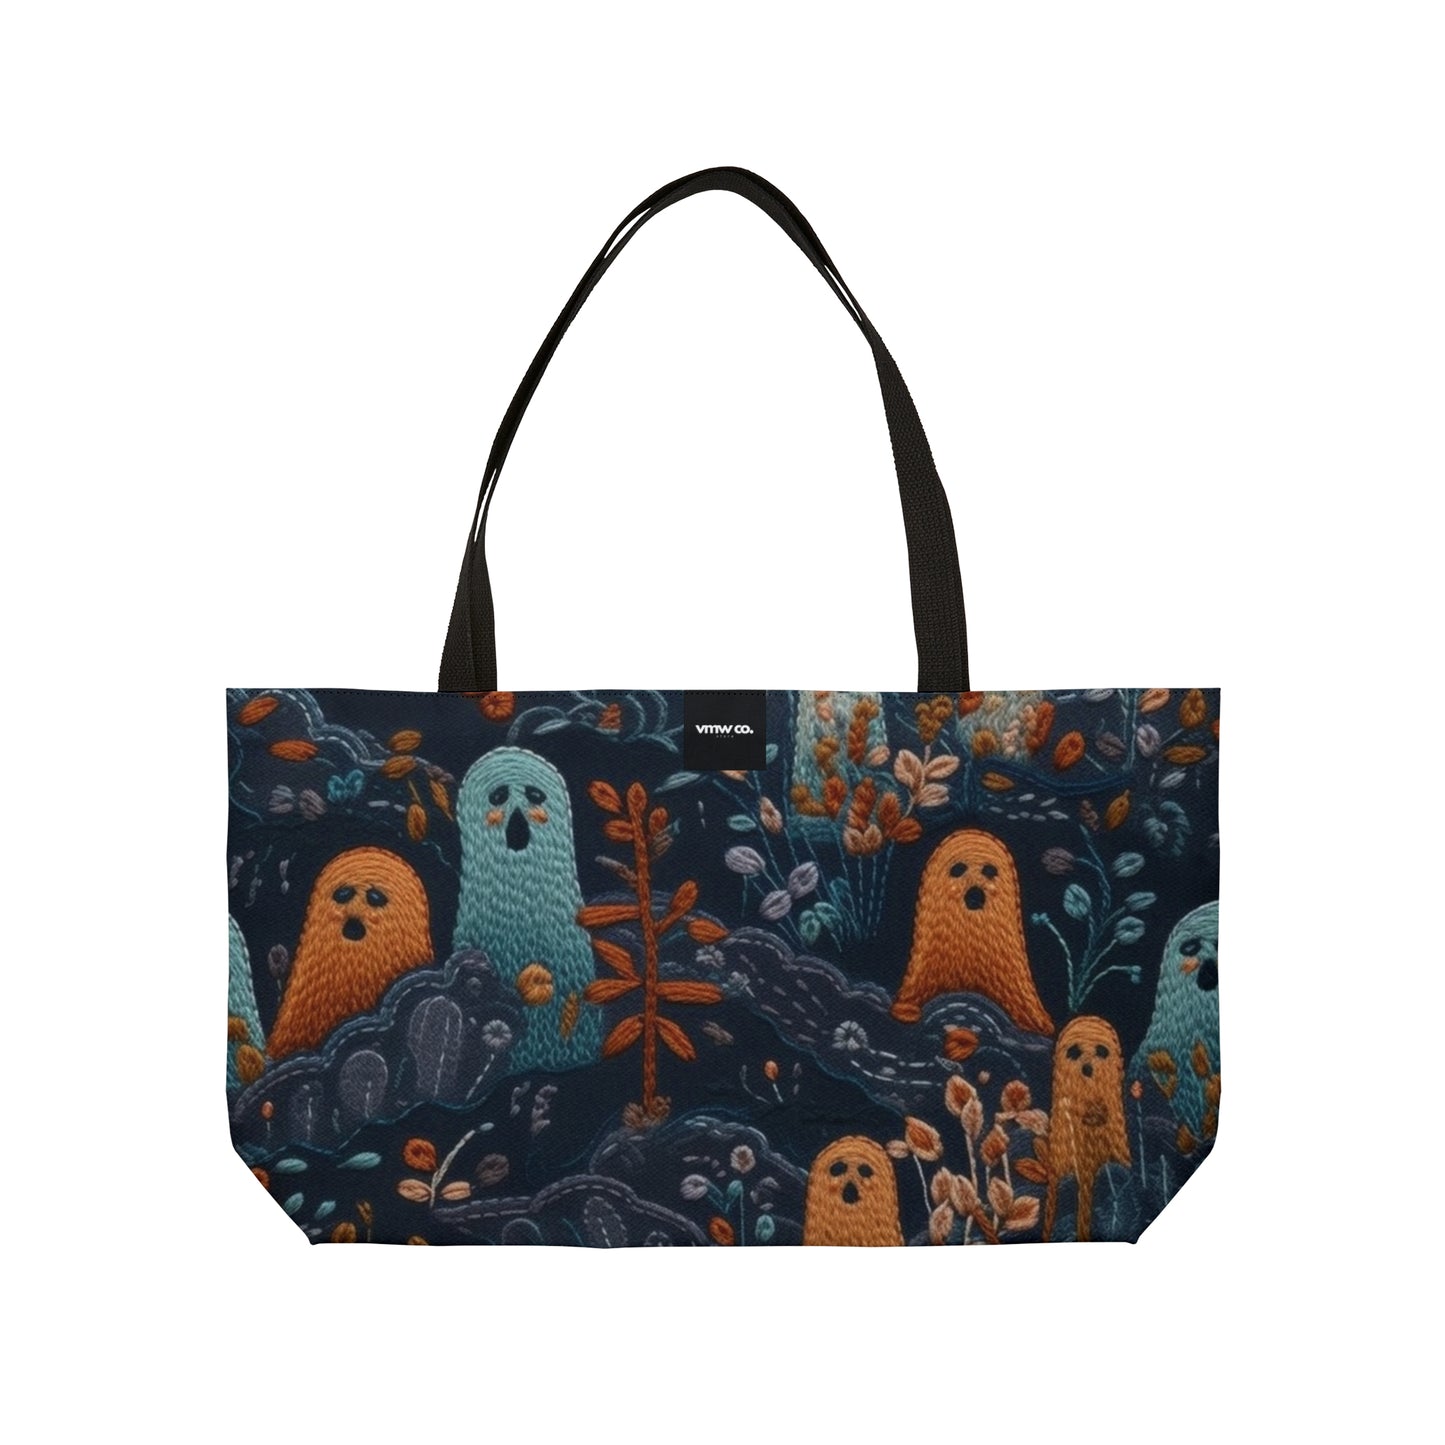 Ghosts in Garden Weekender Tote Bag